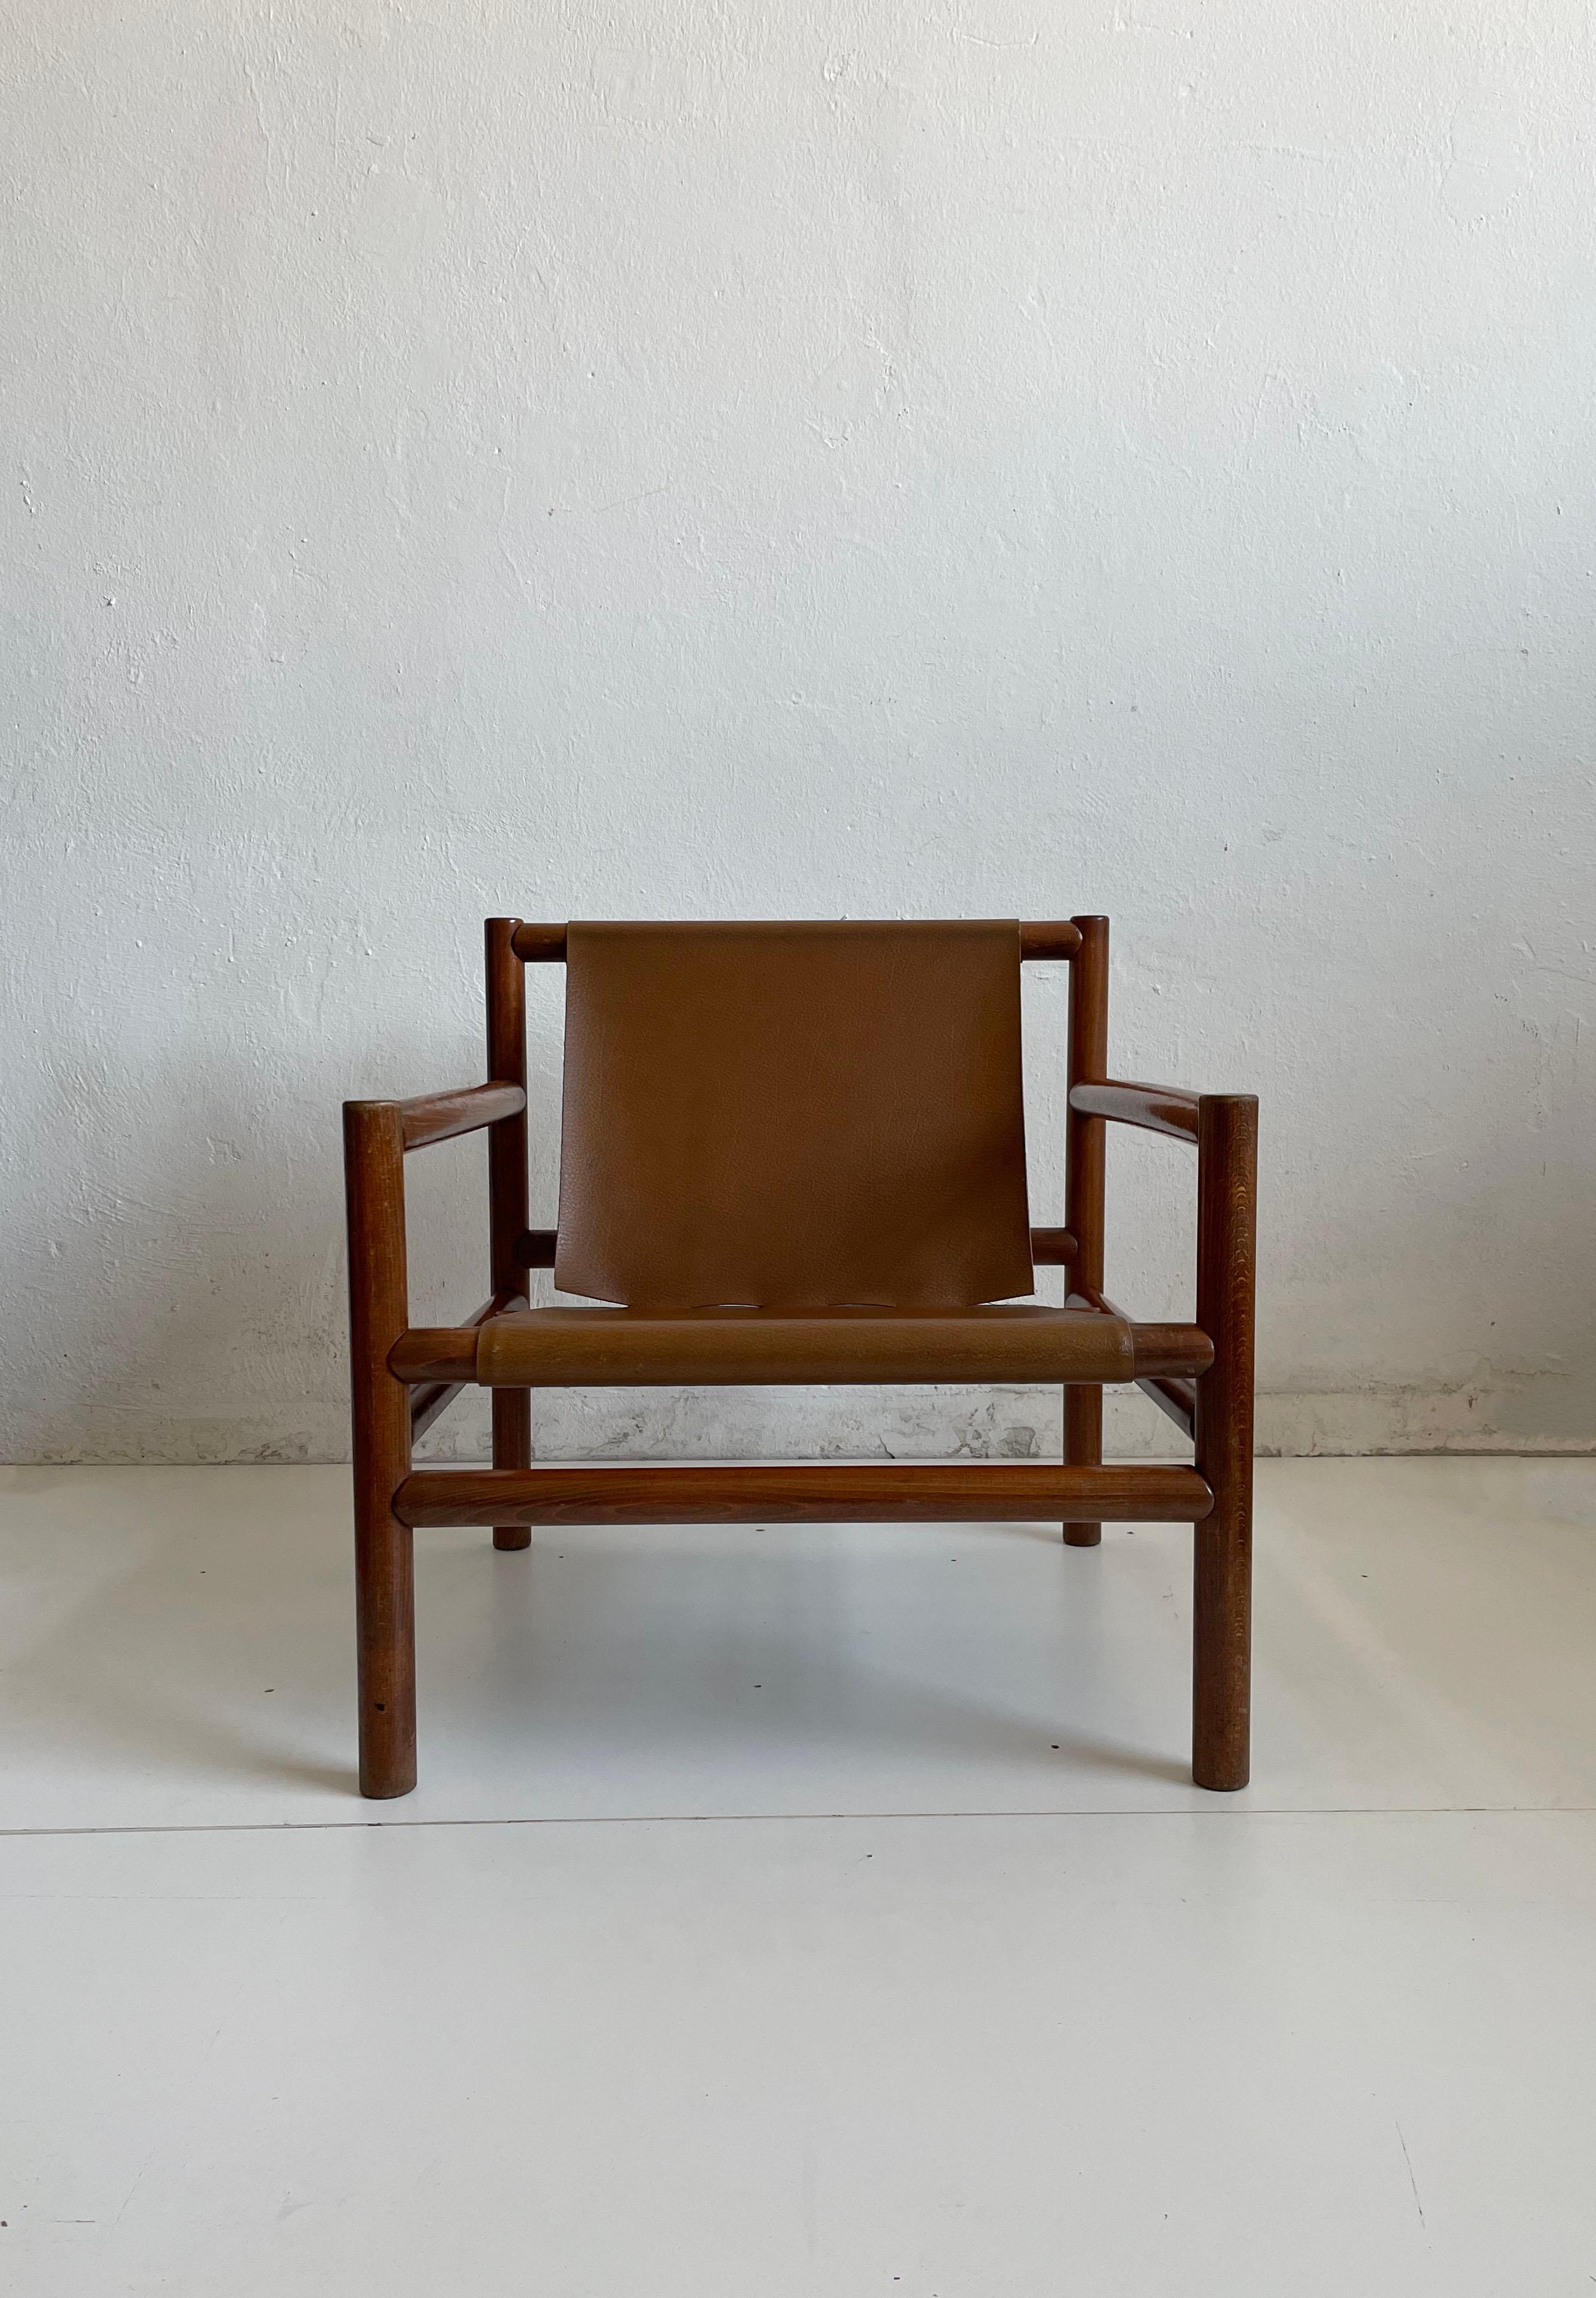 Fauteuil moderne du milieu du siècle conçu par Branko Ursic et fabriqué par Stol Kamnik, Slovénie, années 1970

La chaise est dotée d'un cadre en bois moderniste et d'un siège minimaliste en faux cuir brun caramel

La structure est saine et